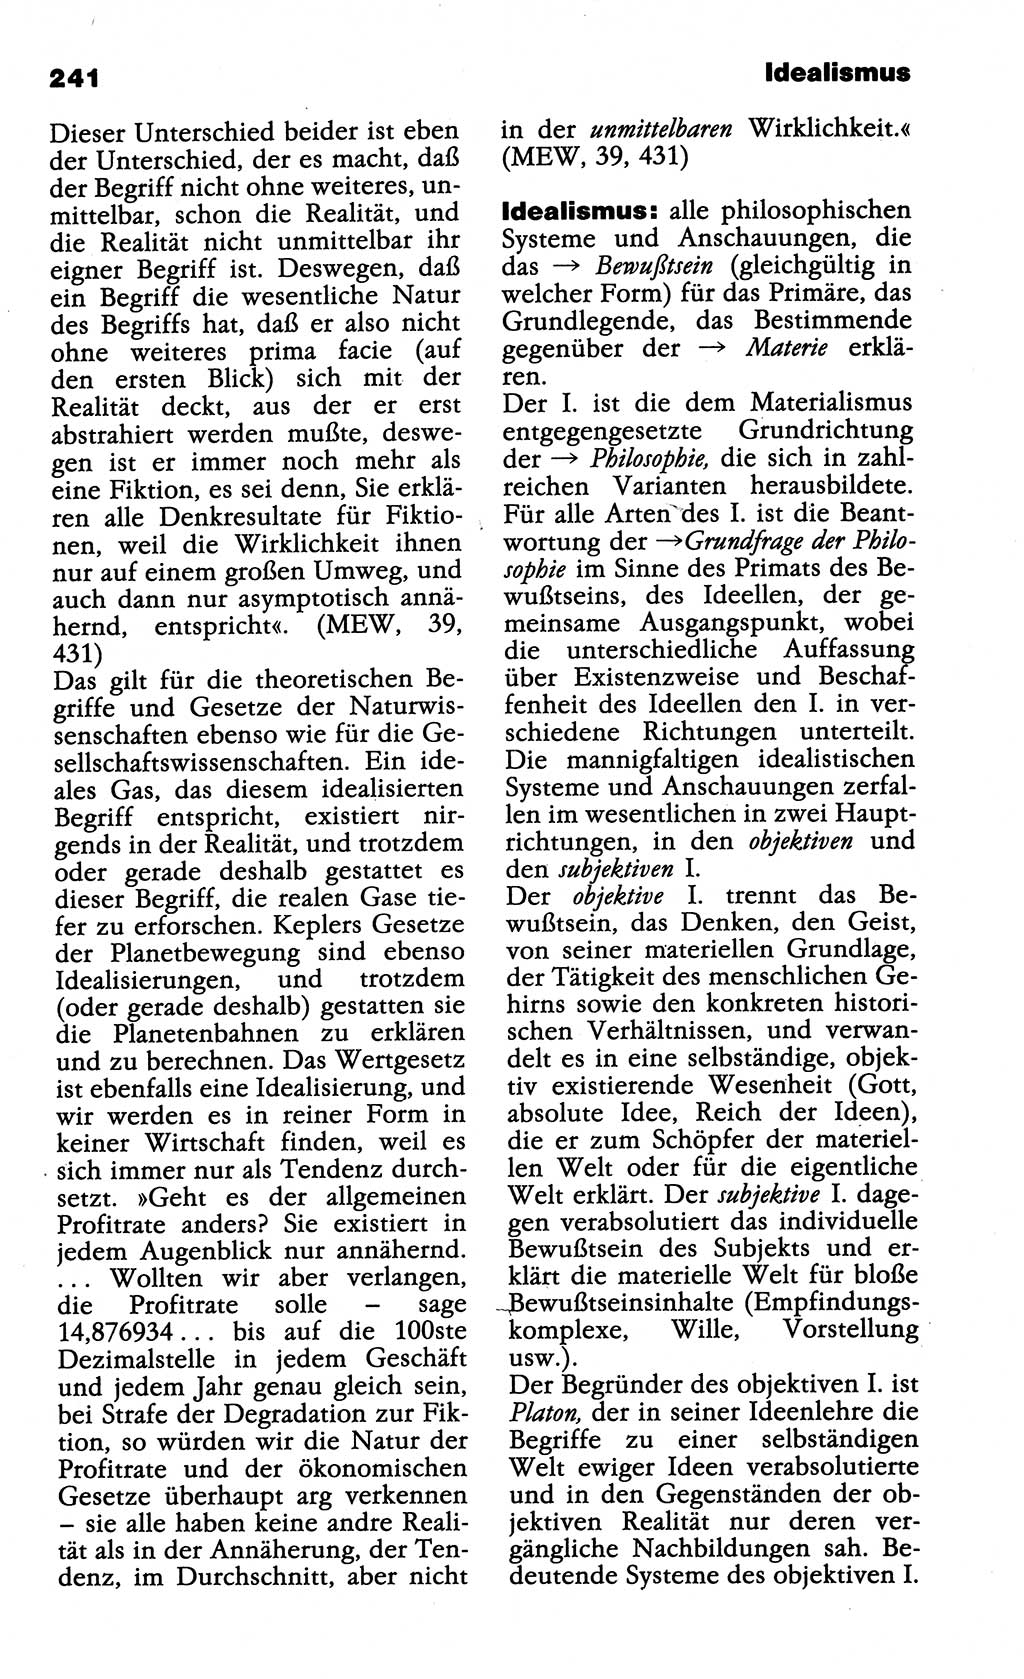 Wörterbuch der marxistisch-leninistischen Philosophie [Deutsche Demokratische Republik (DDR)] 1985, Seite 241 (Wb. ML Phil. DDR 1985, S. 241)